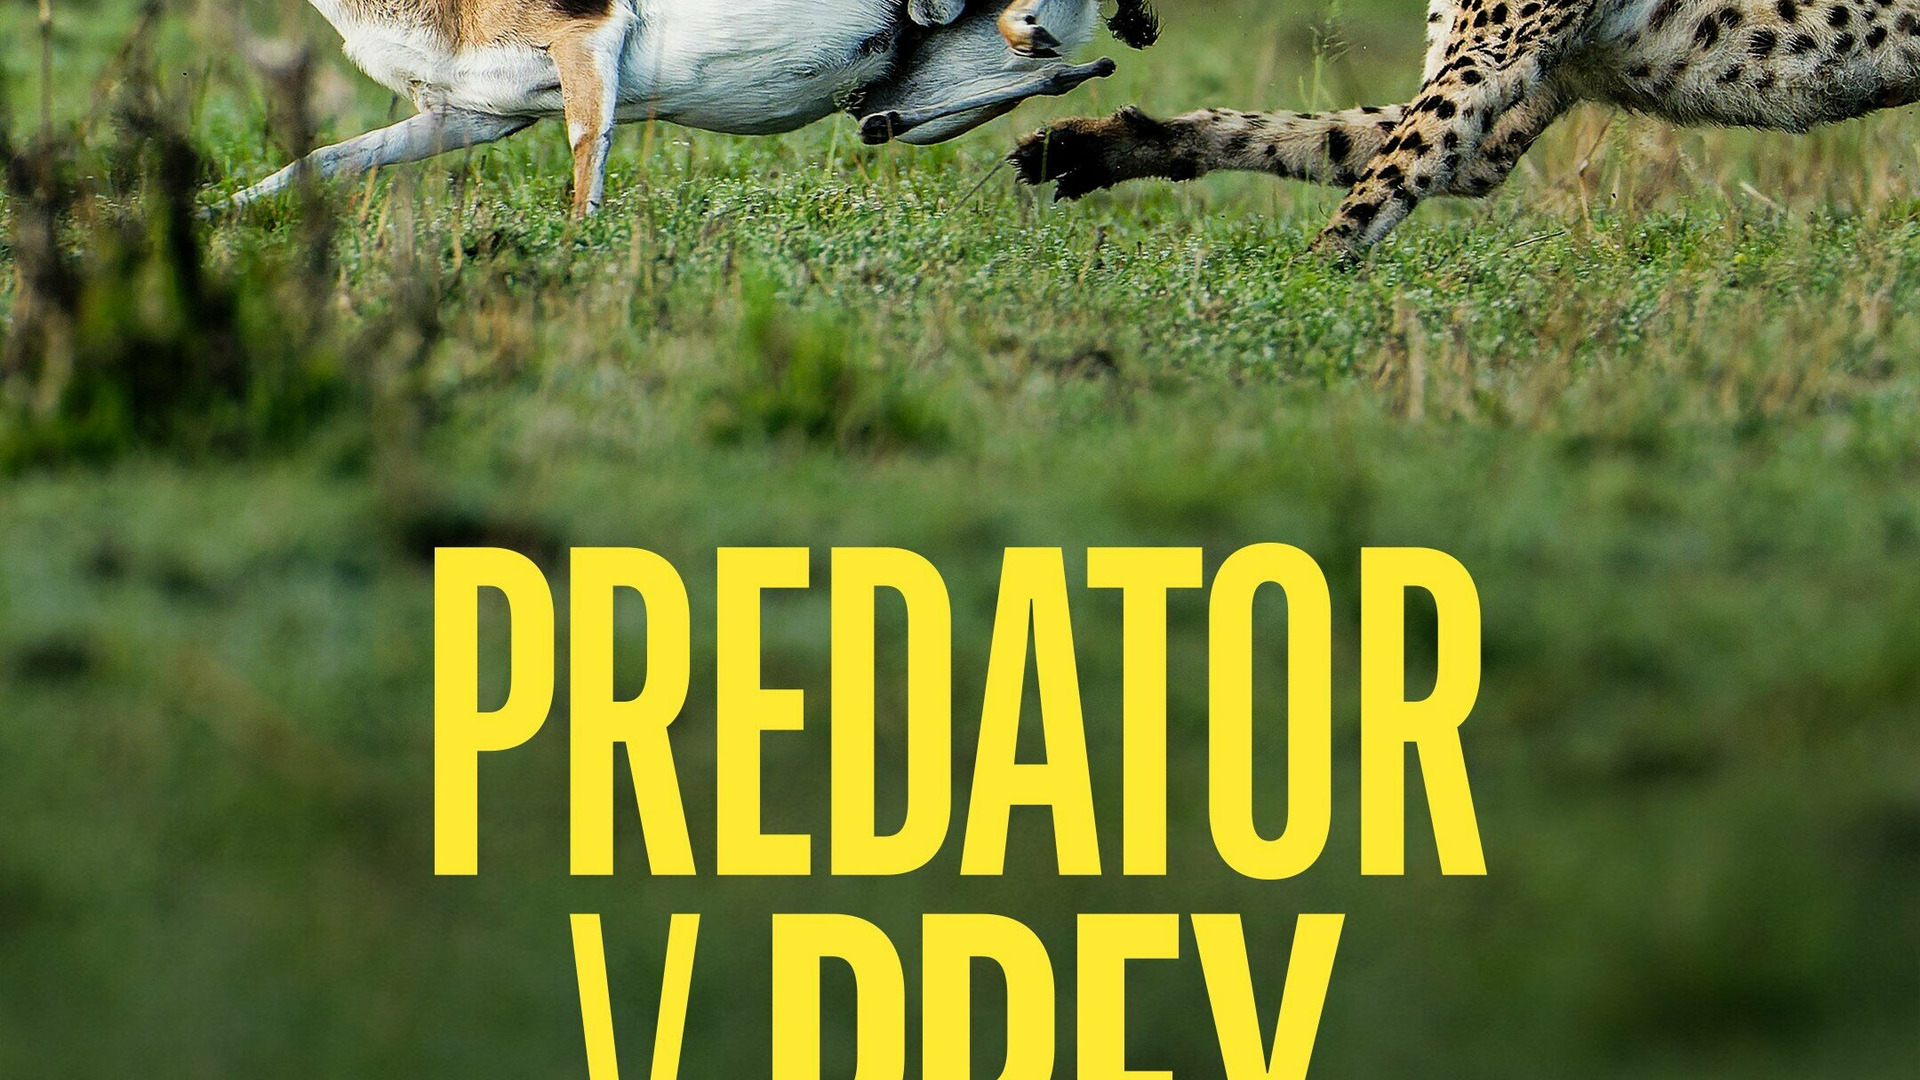 Show Predator vs Prey